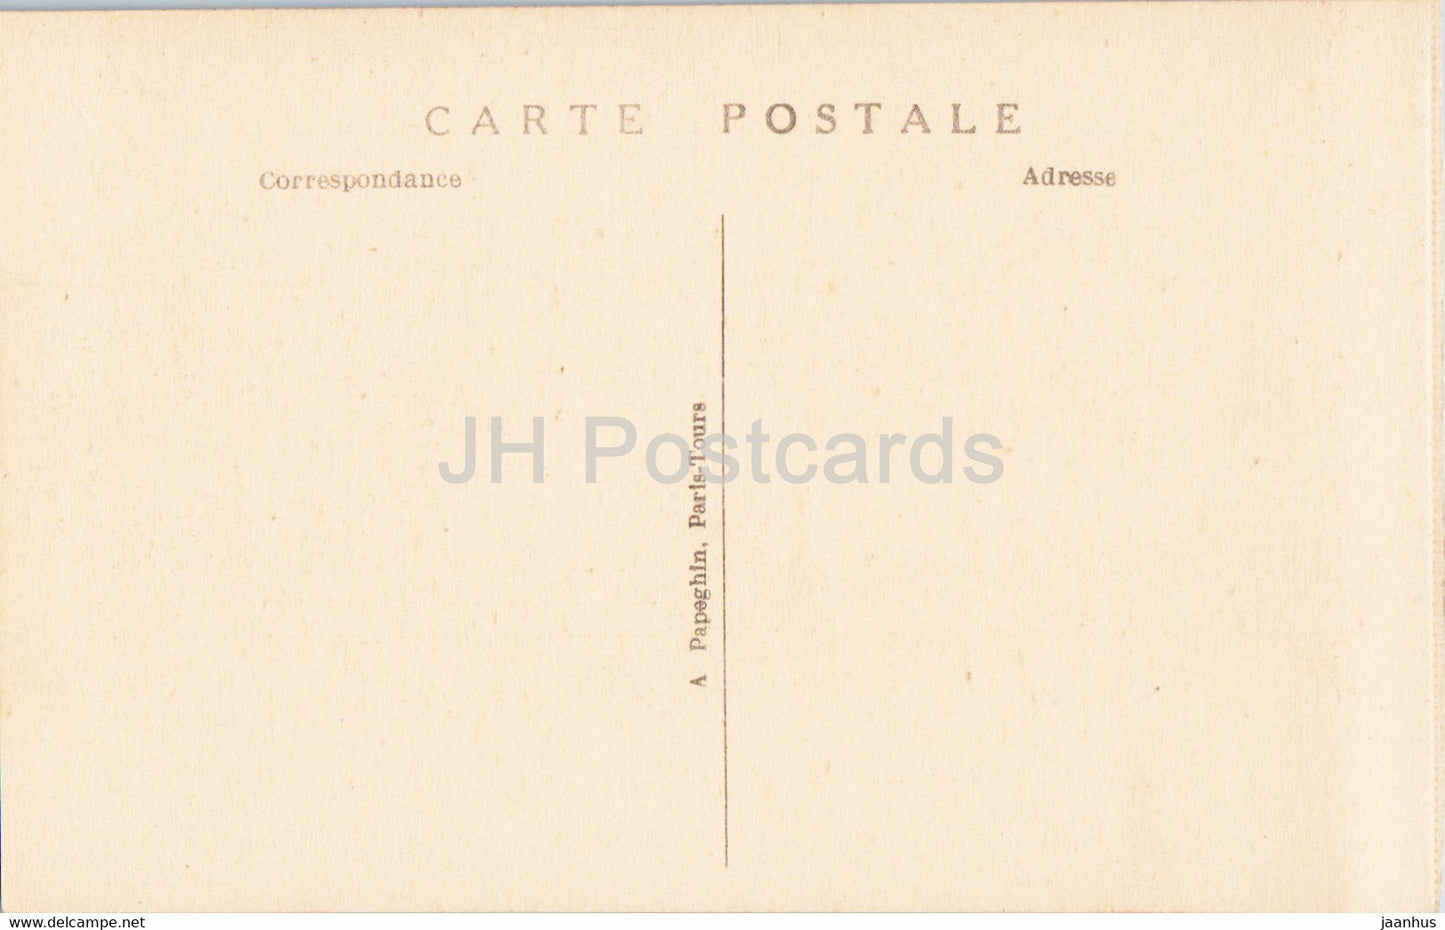 Versailles - Le Palais - Salon de l'Ceil de Boeuf - 49 - carte postale ancienne - France - inutilisée